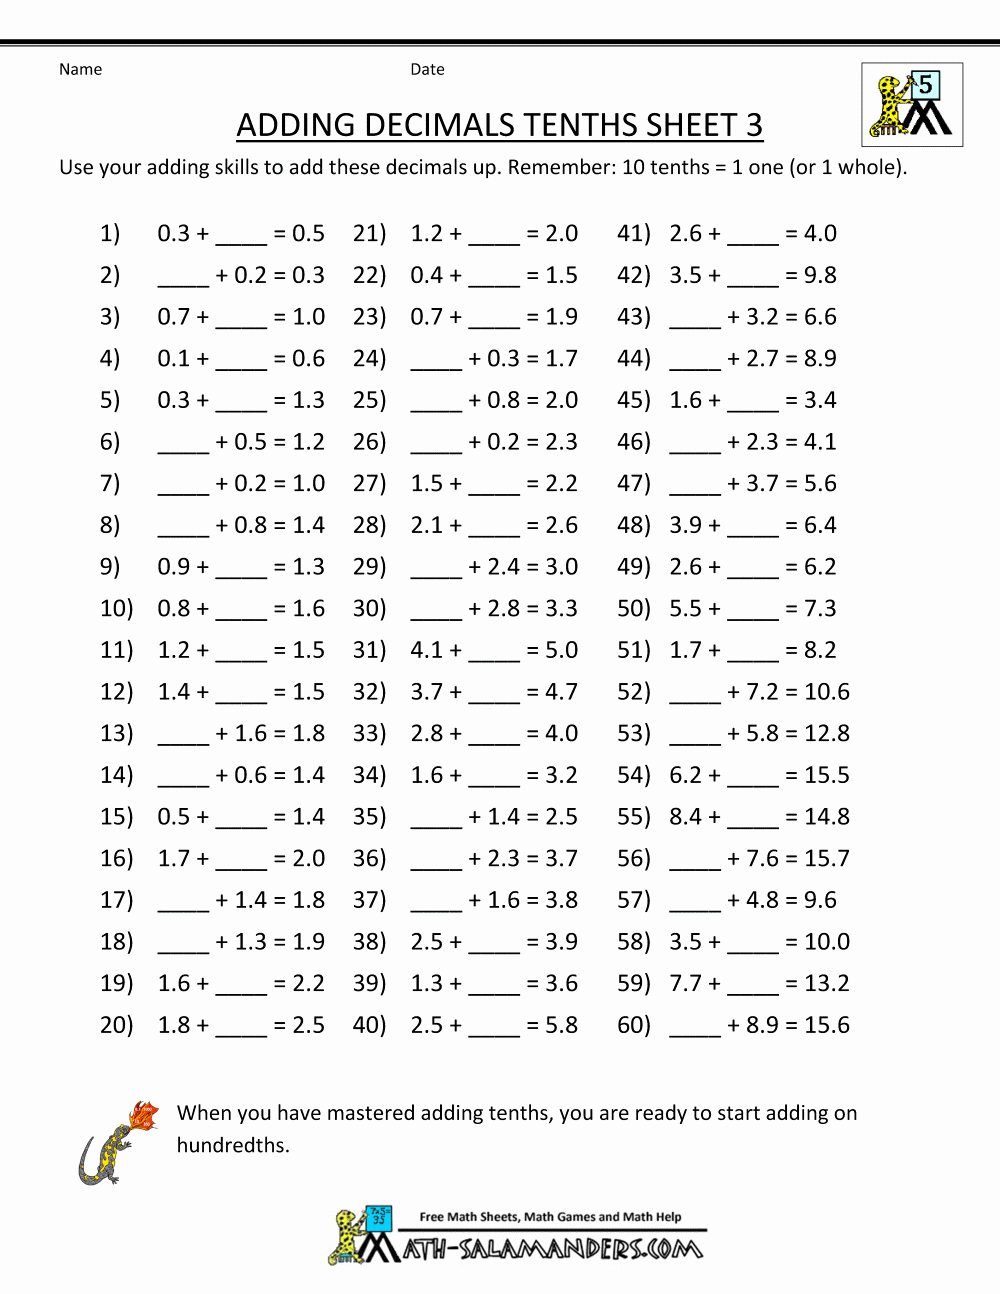 Adding Decimals Worksheet Pdf Awesome Decimal Math Worksheets Addition